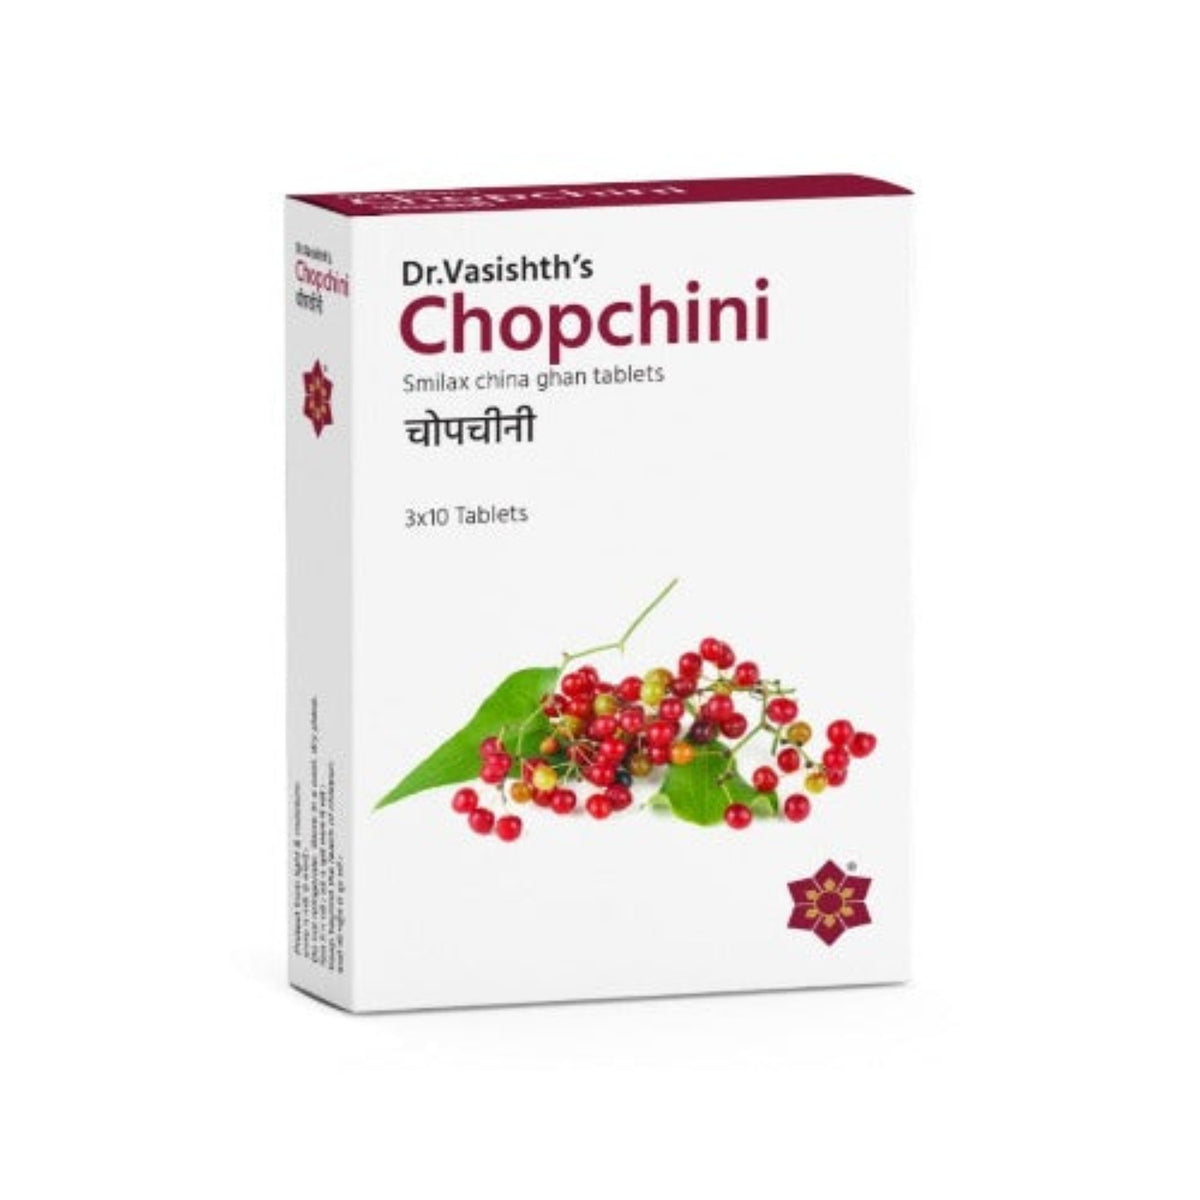 Dr.Vasishth's Ayurvedic Chopchini 3 X 10 Tablets